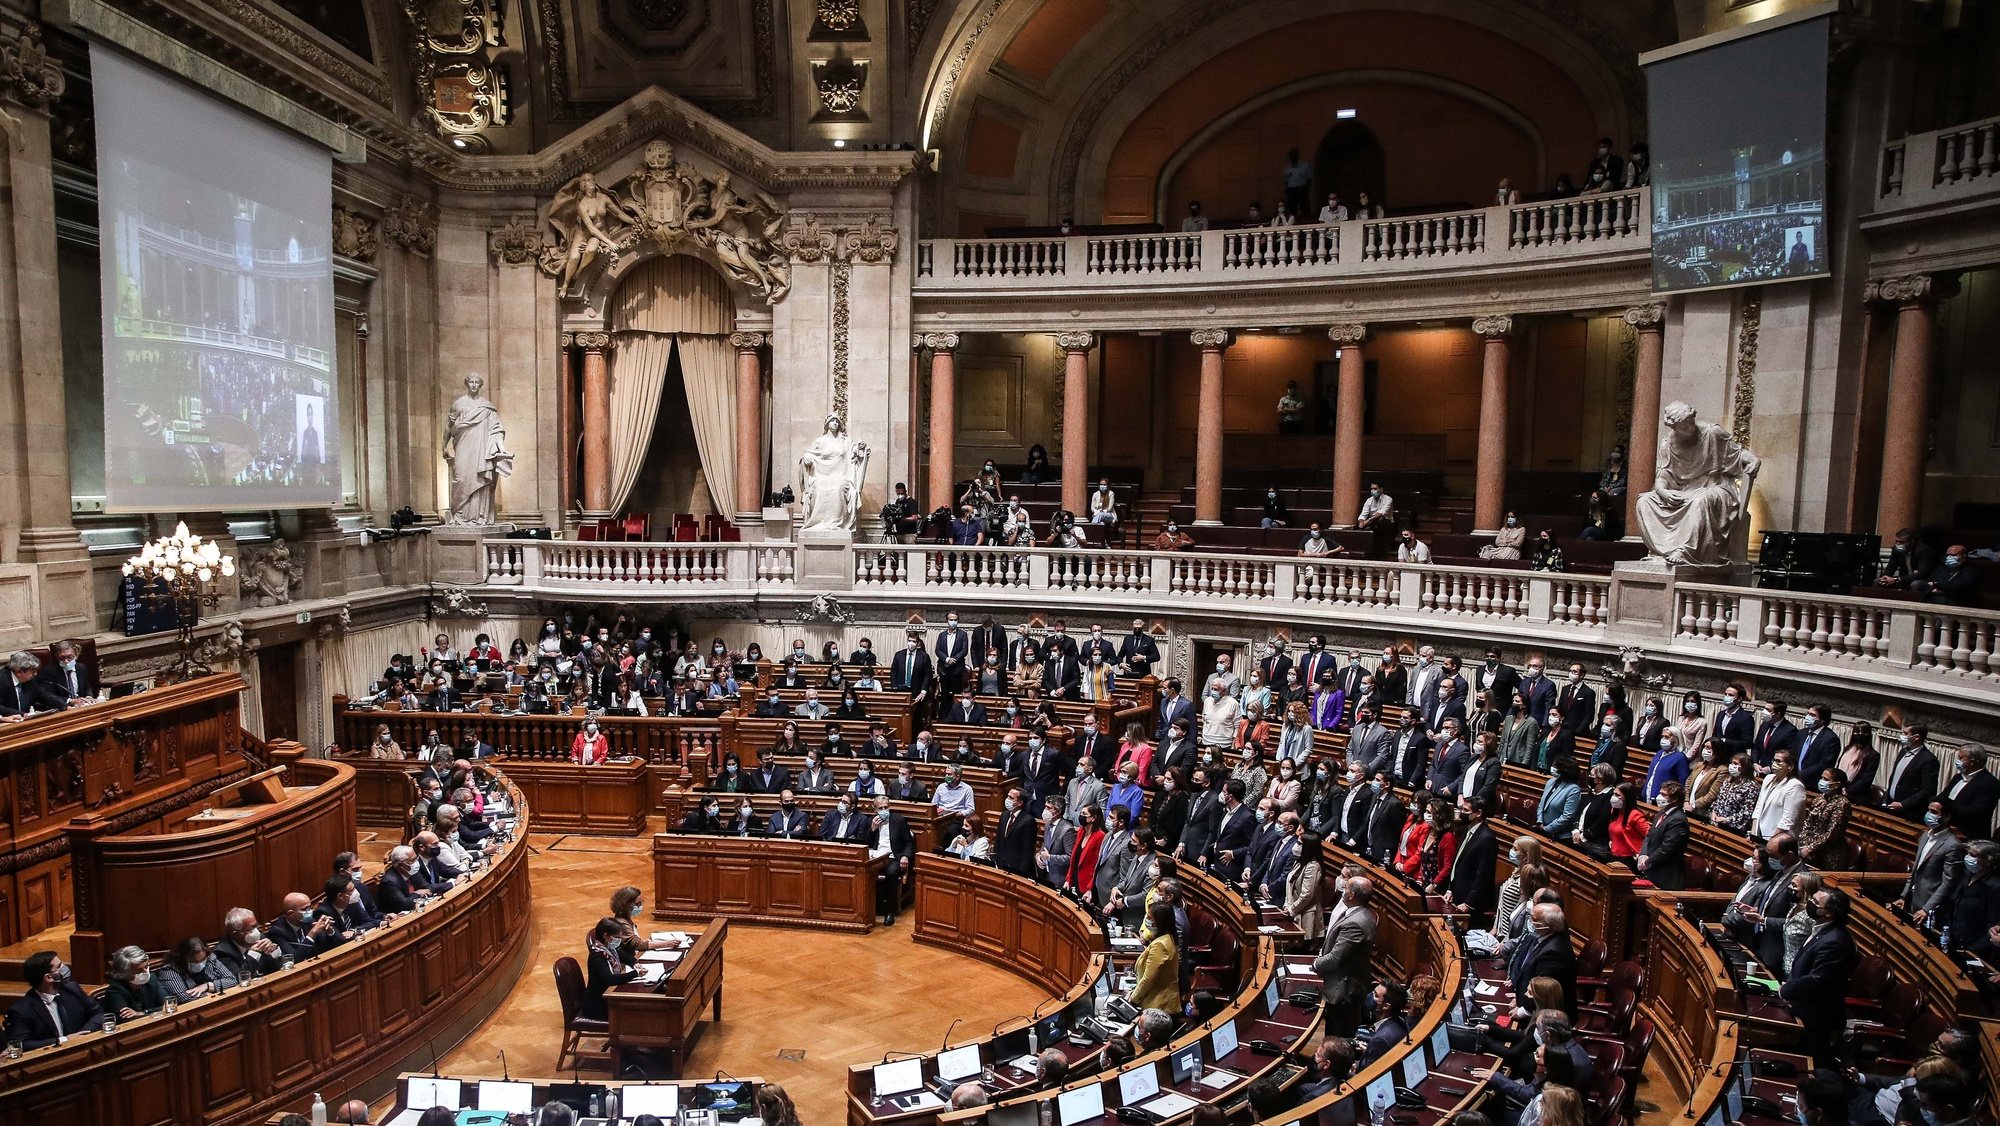 A bancada do PS vota a favor da proposta de Orçamento do Estado para 2022 (OE2022), na Assembleia da República, em Lisboa, 27 de outubro de 2021. A proposta de Orçamento do Estado para 2022 entregue no parlamento prevê que a economia portuguesa cresça 4,8% em 2021 e 5,5% em 2022. MÁRIO CRUZ/LUSA